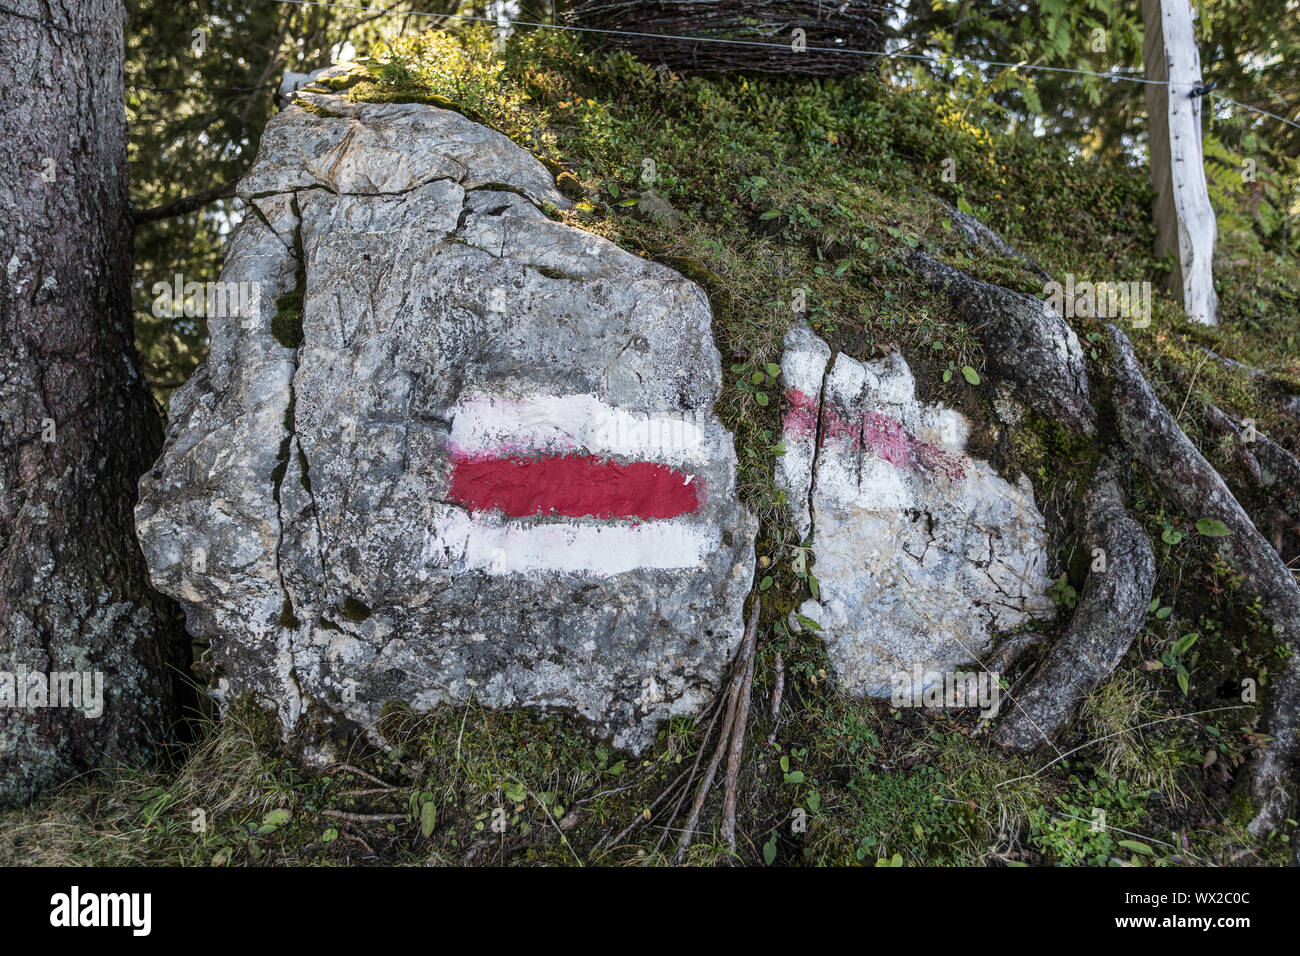 Weiss-rot-weiss steht für Mountain Trail, Wirzweli, Nidwalden, Schweiz, Europa Stockfoto